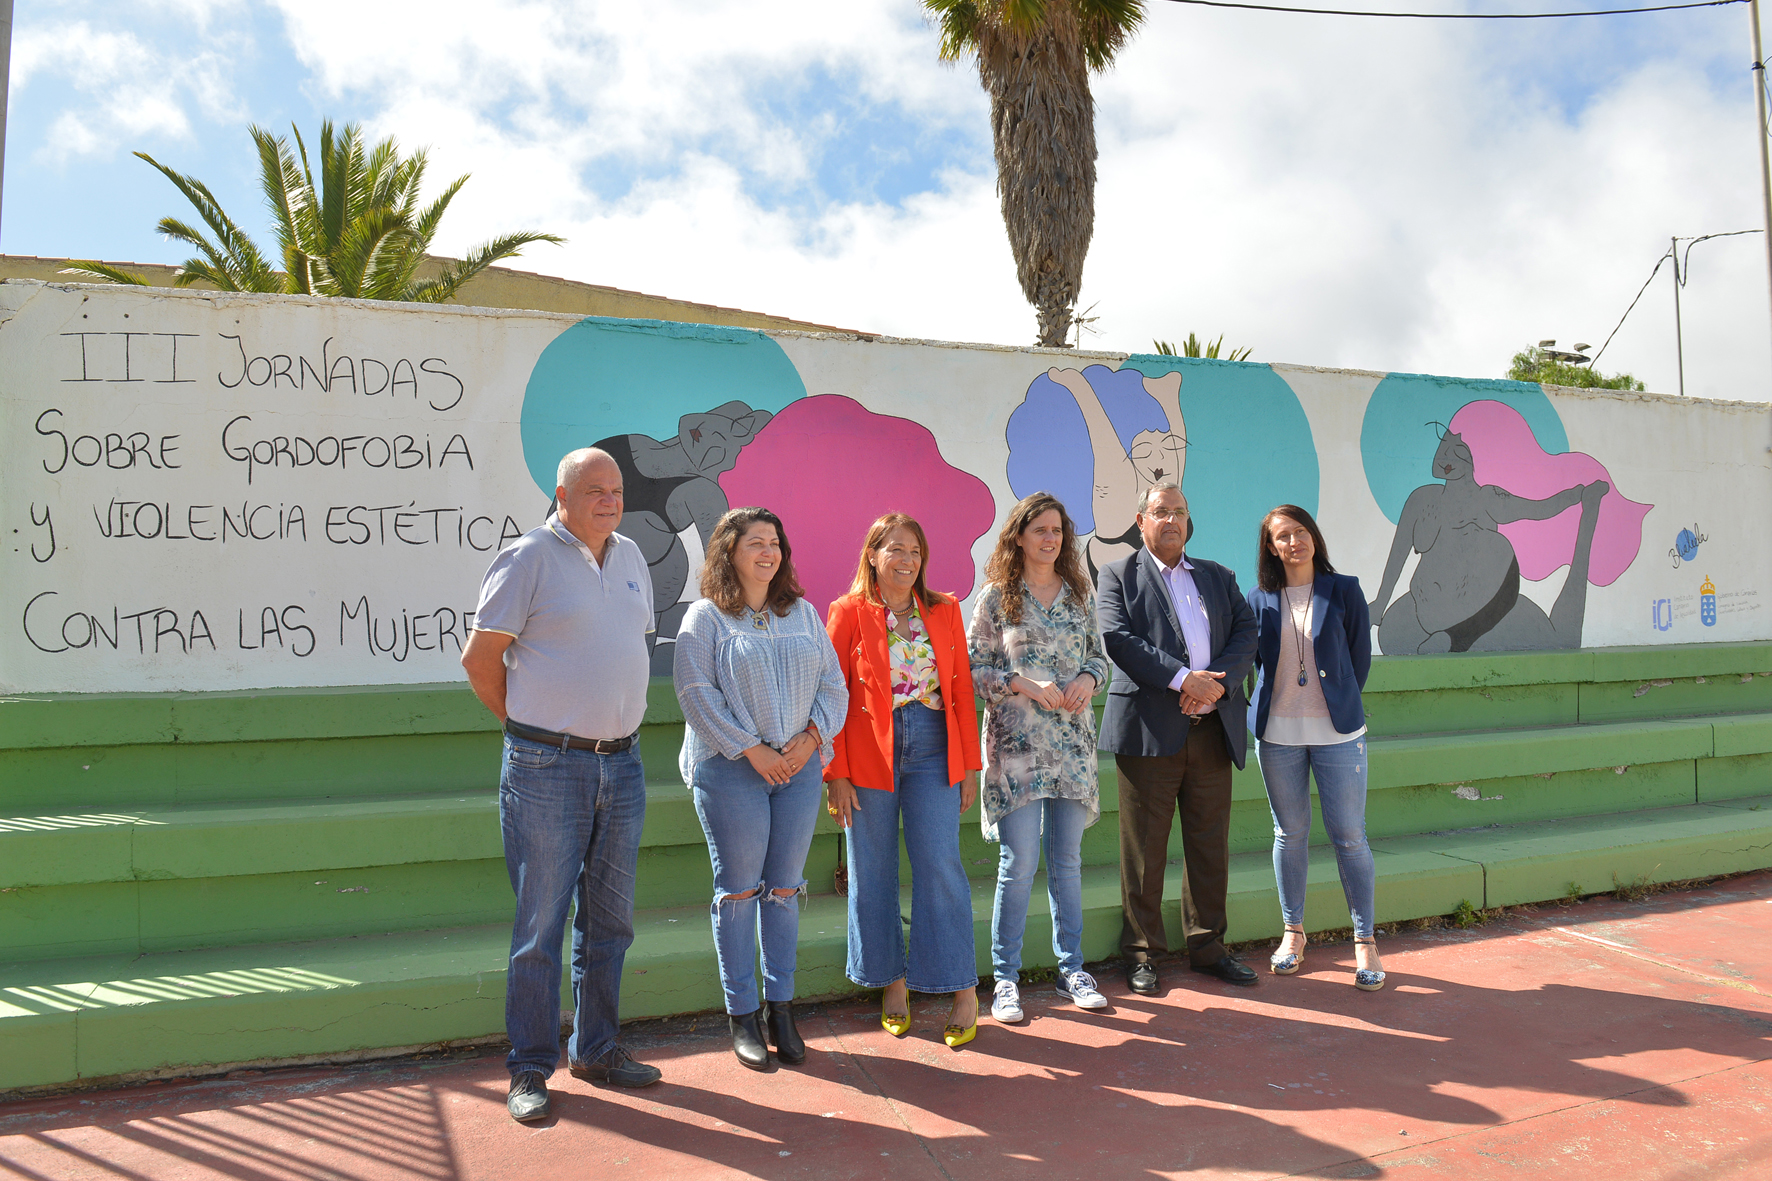 El Instituto Canario de Igualdad inaugura un mural que visibiliza la gordofobia y la violencia estética contra las mujeres